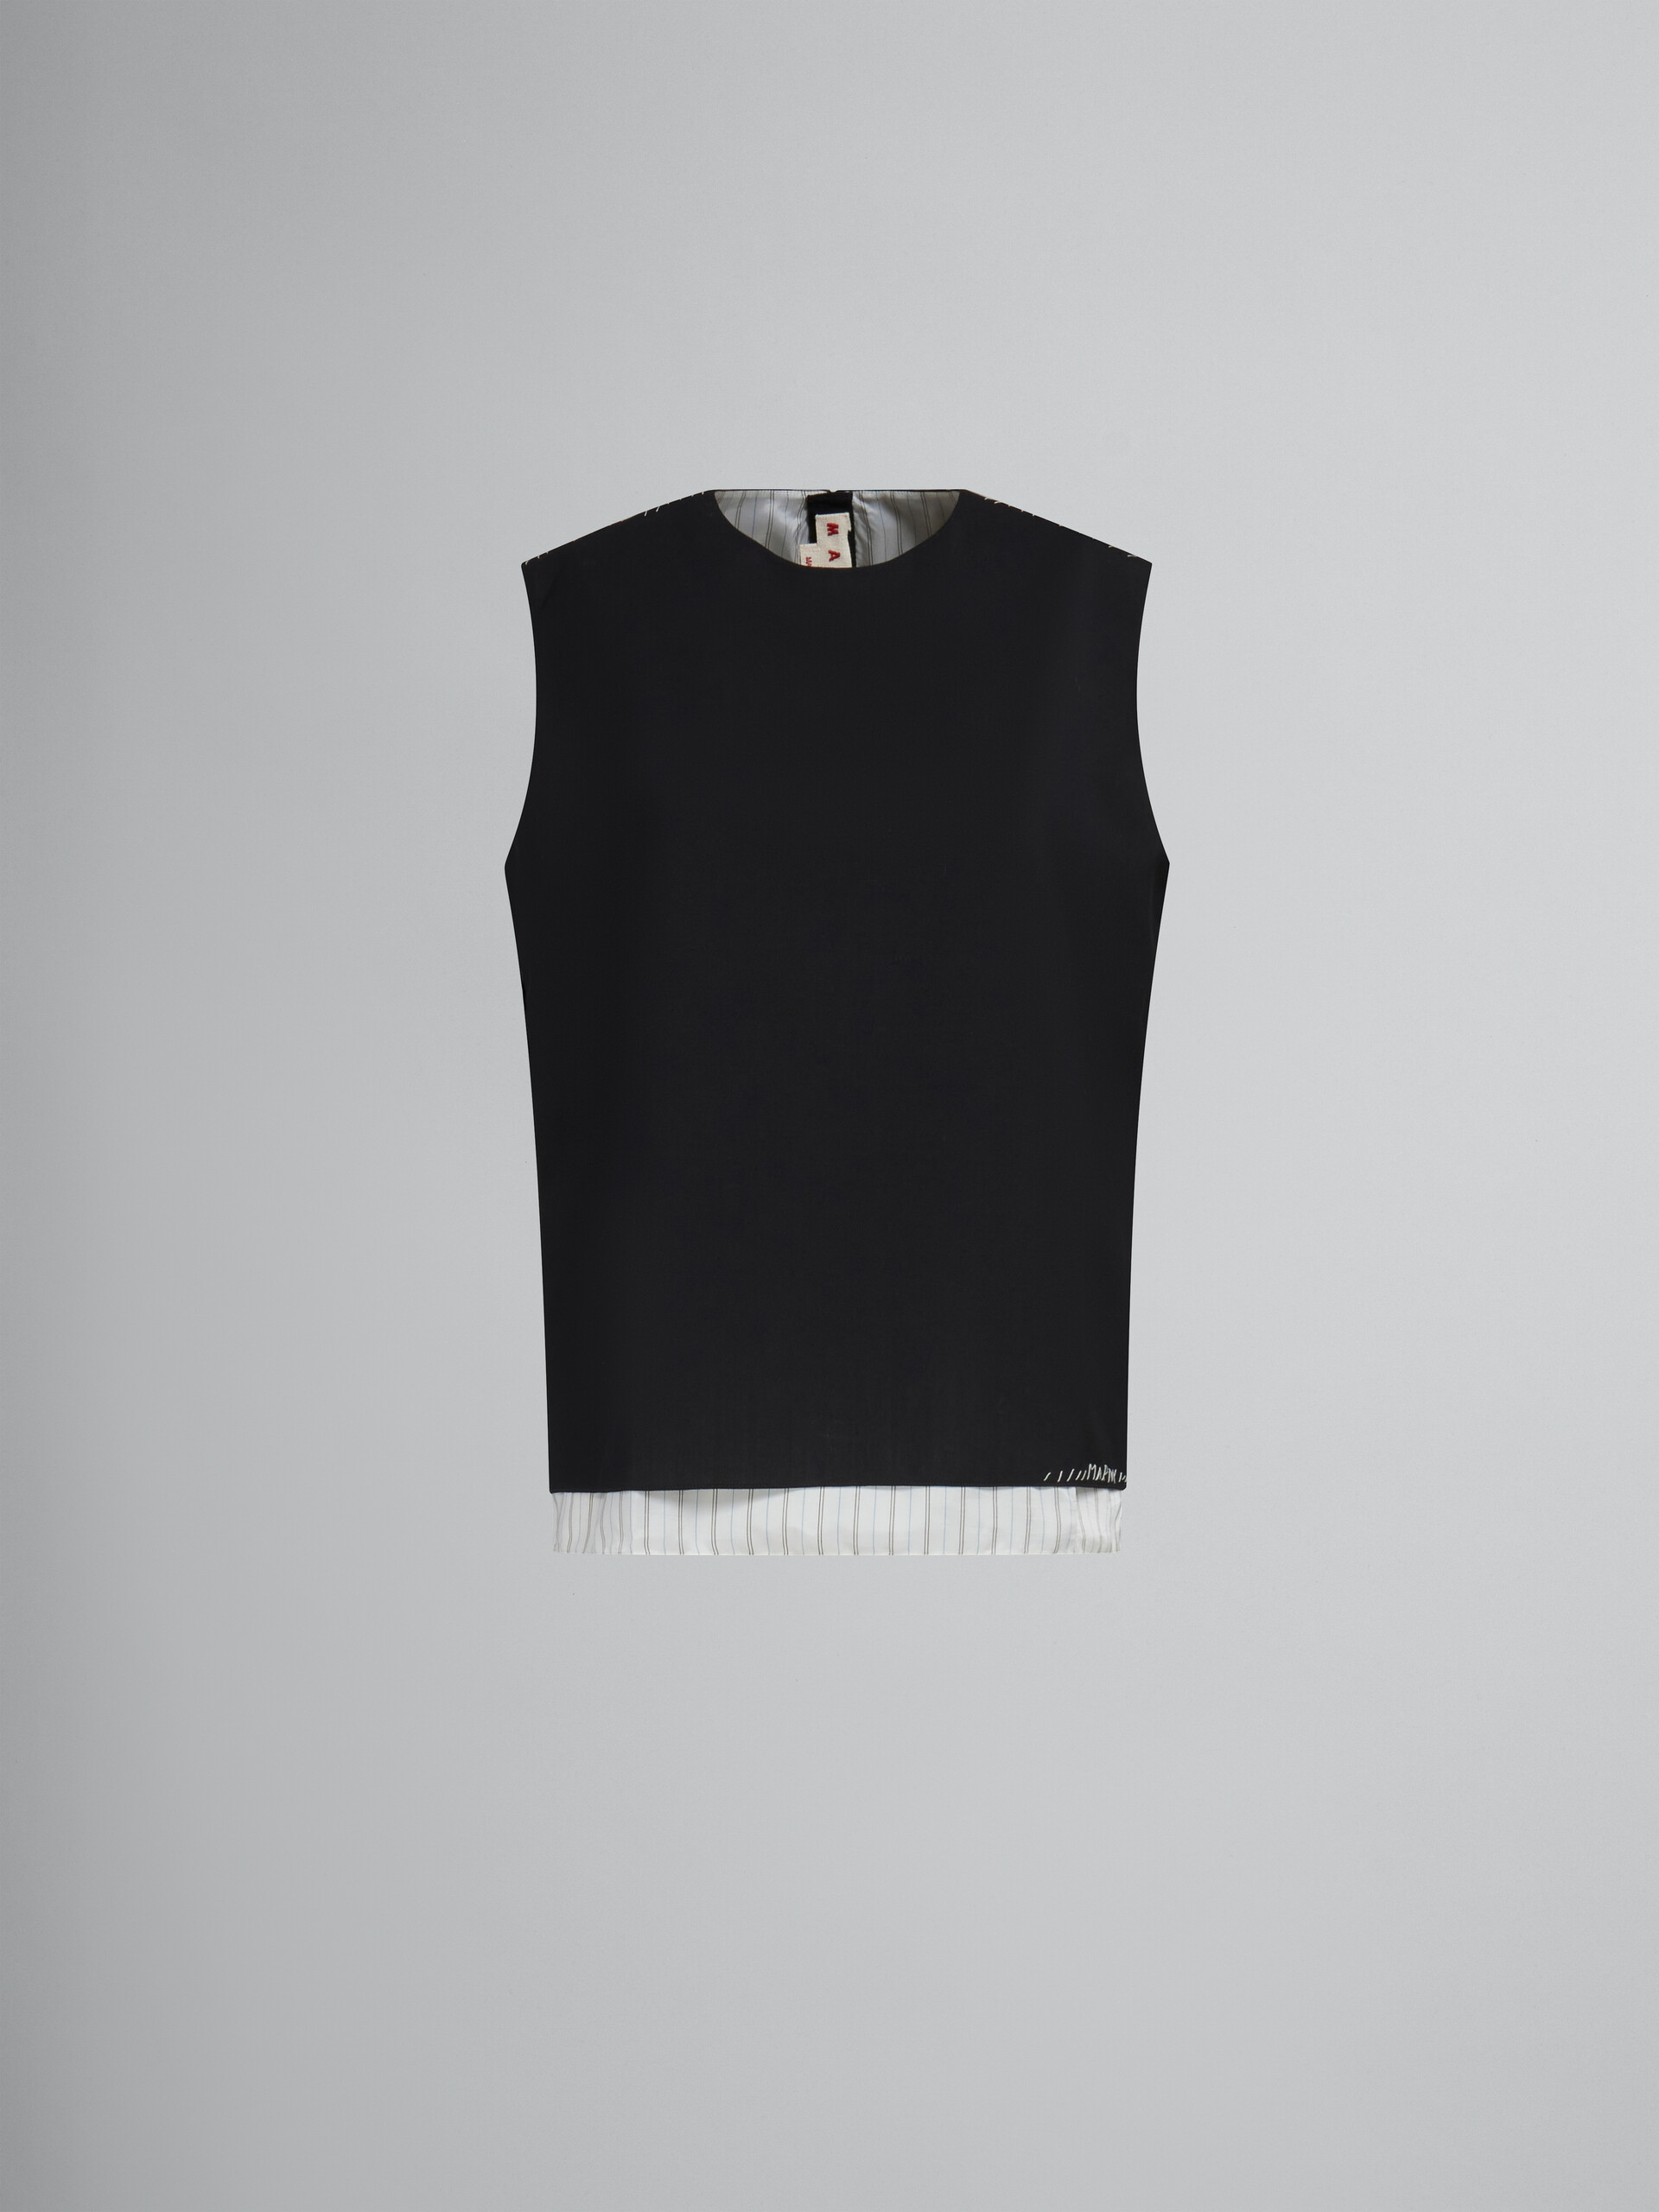 ブラック トロピカルウール製 ノースリーブトップス、マルニメンディング装飾 - シャツ - Image 1